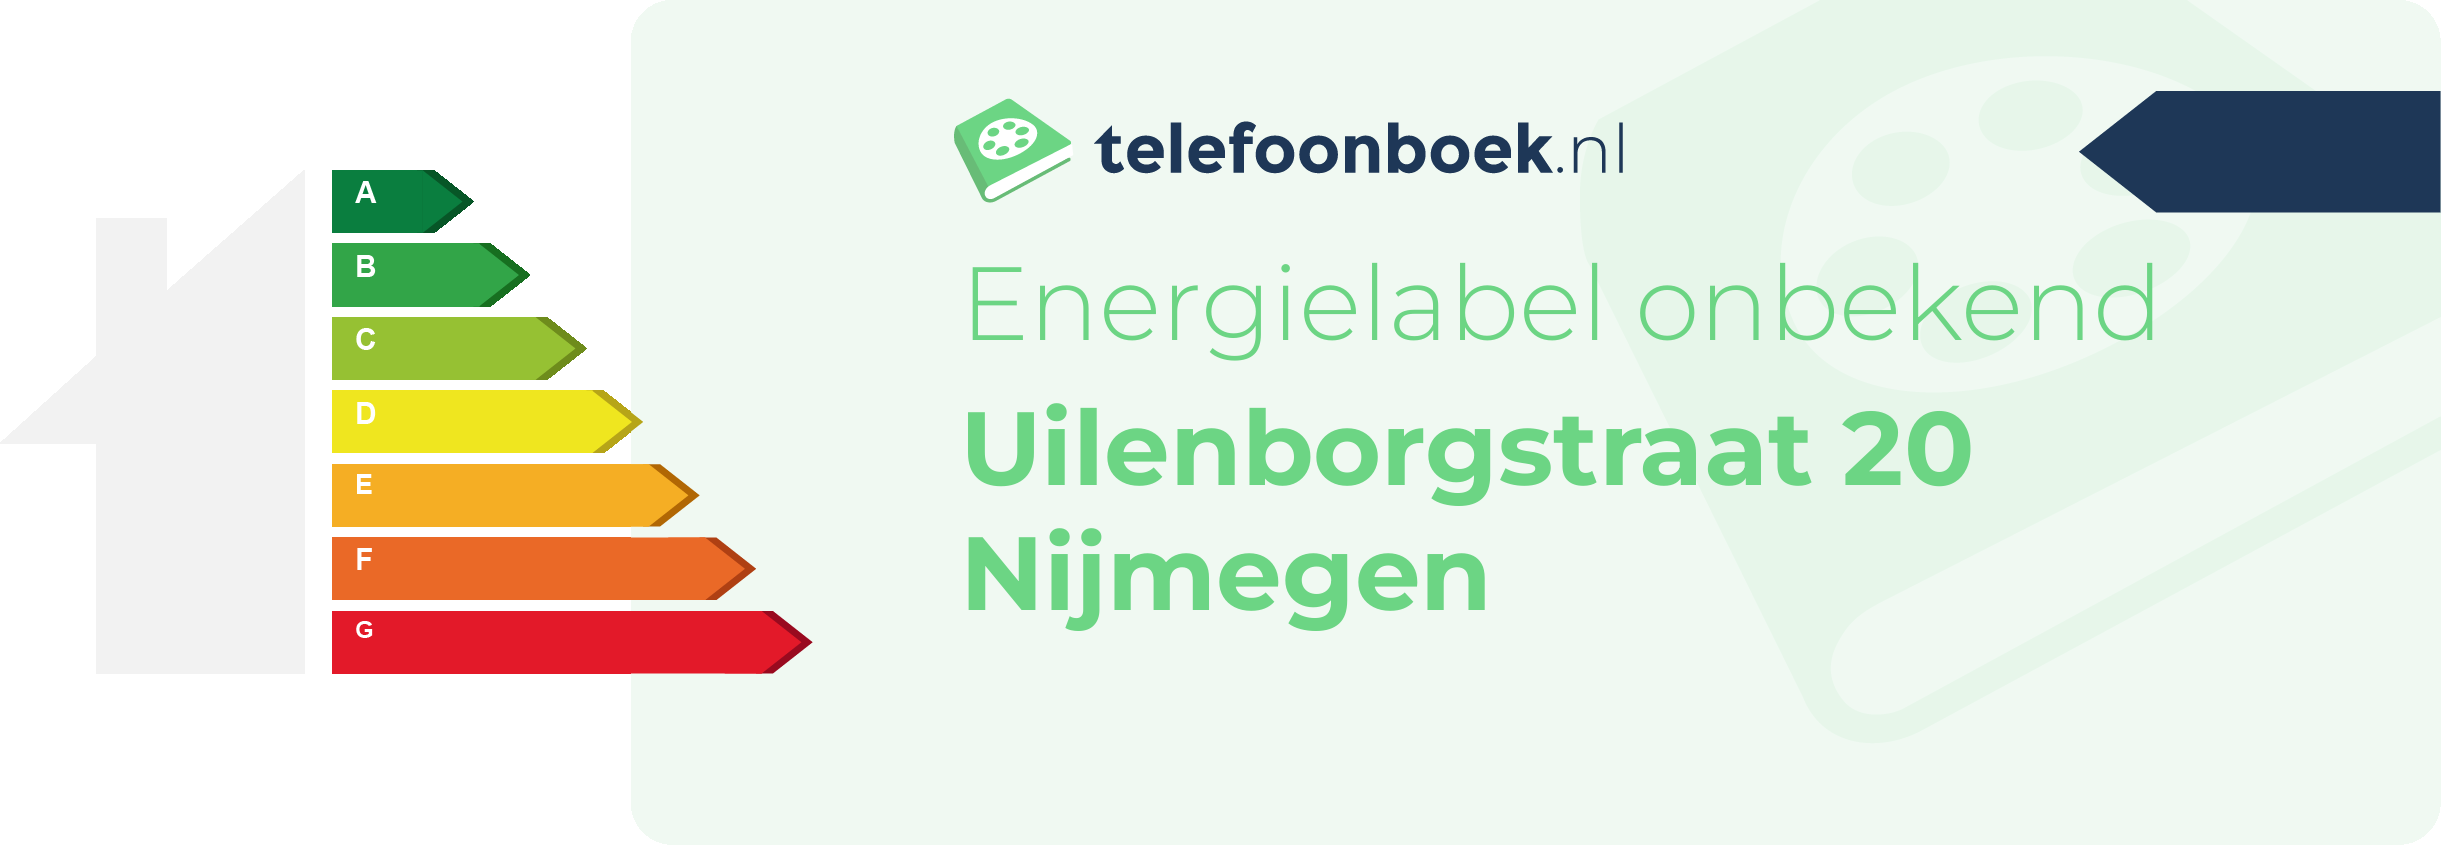 Energielabel Uilenborgstraat 20 Nijmegen